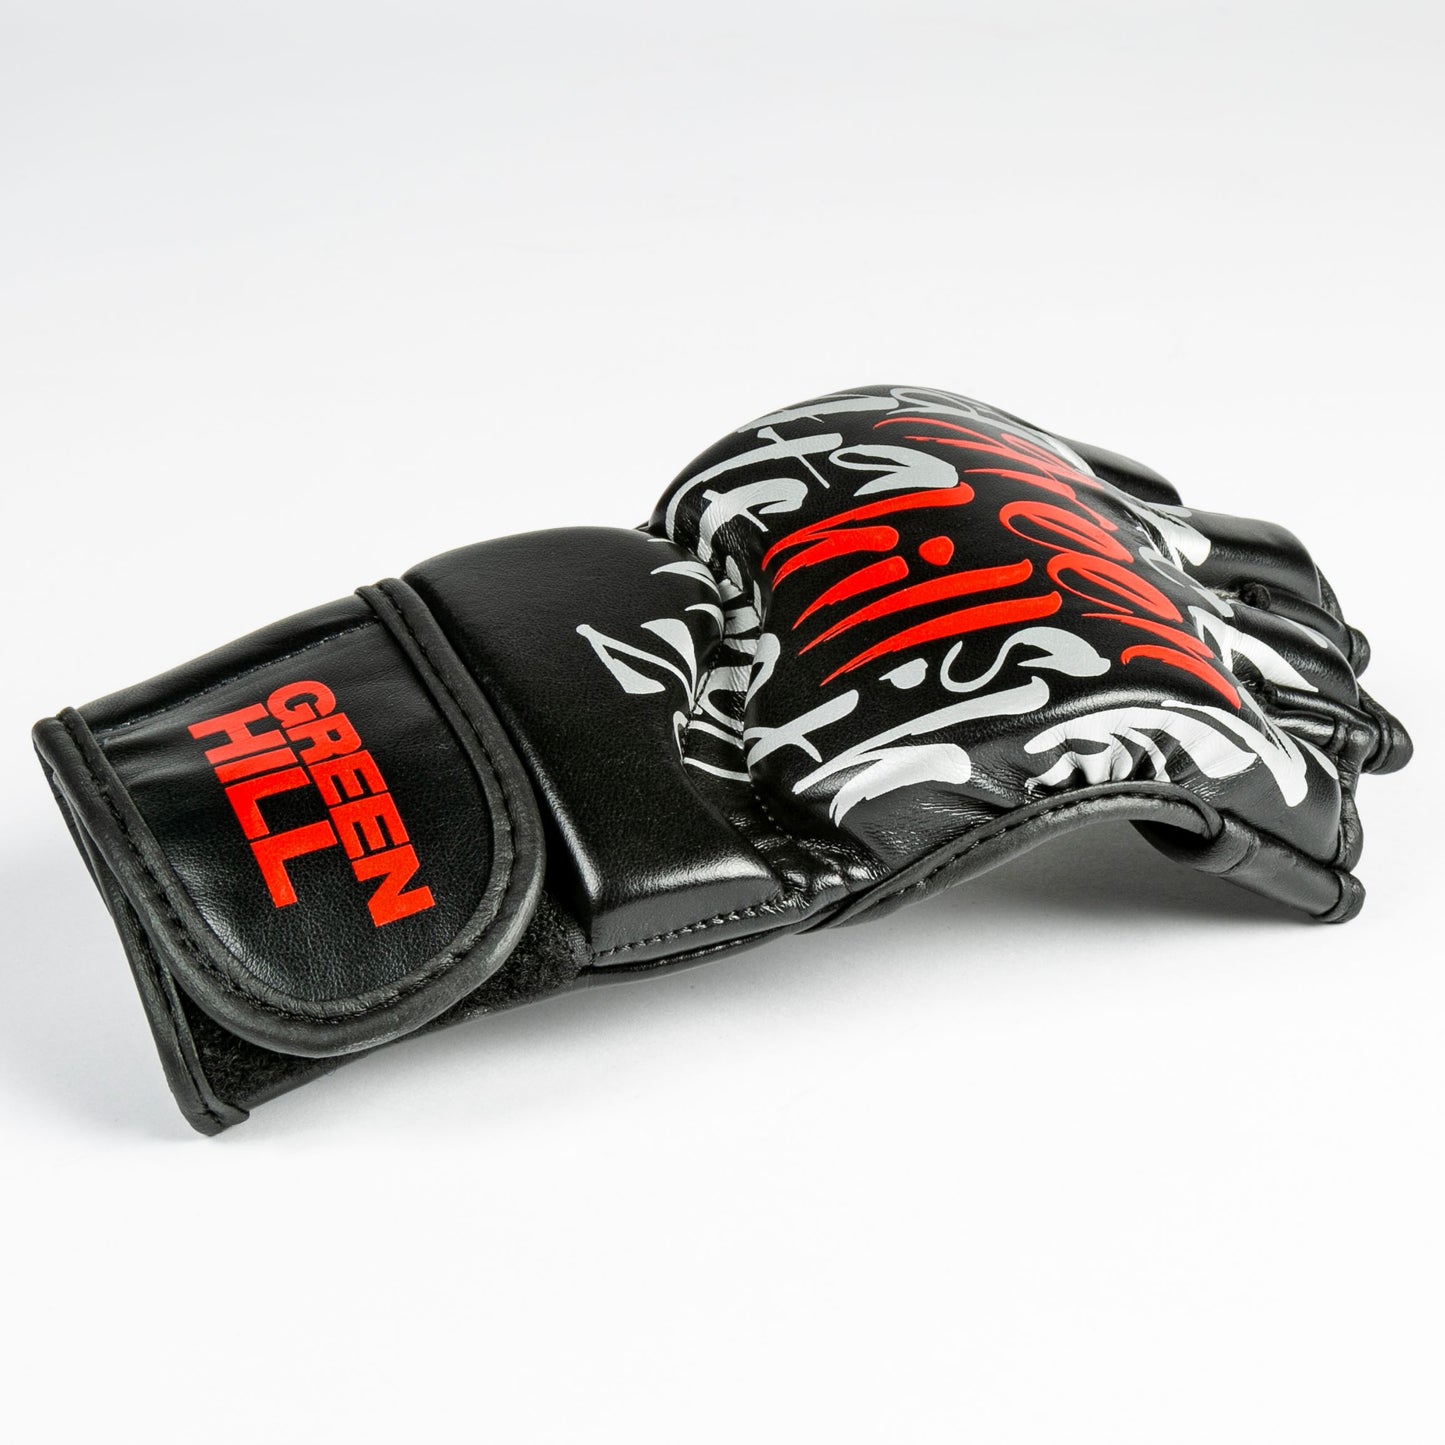 MMA Gloves HOUND PAW